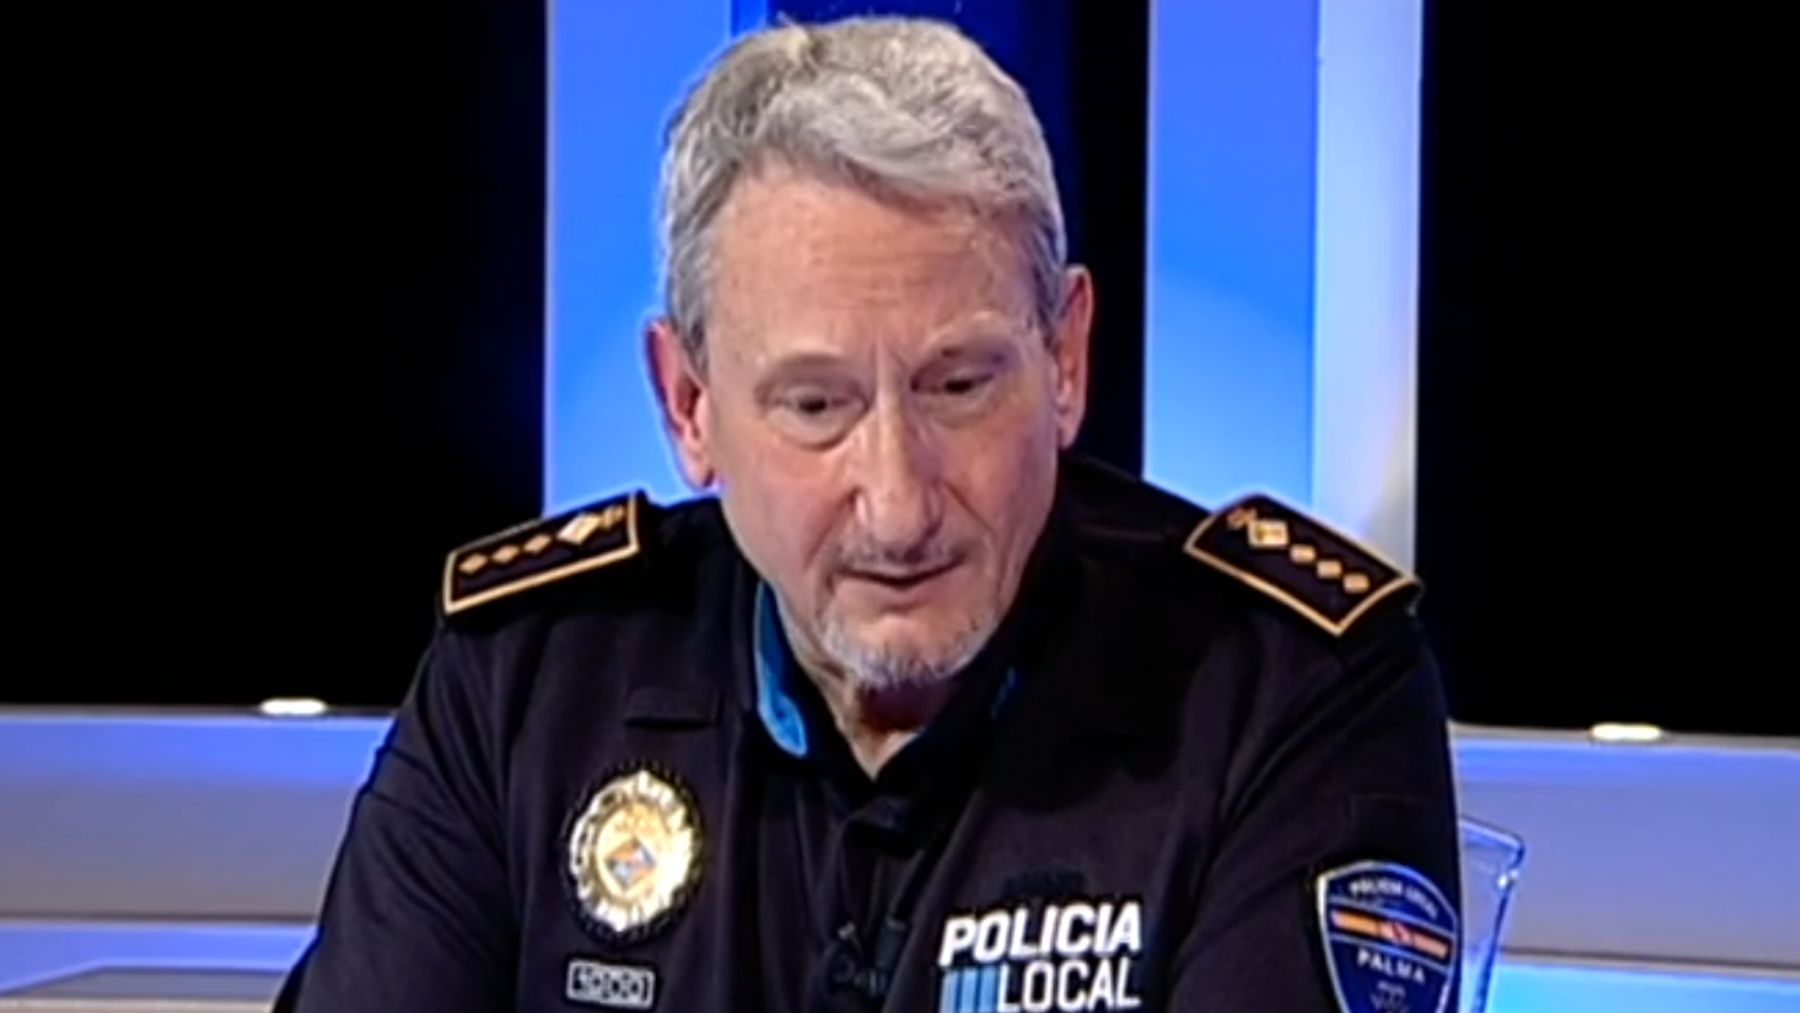 El intendente jefe de la Policía Local de Palma, José Luís Carque.